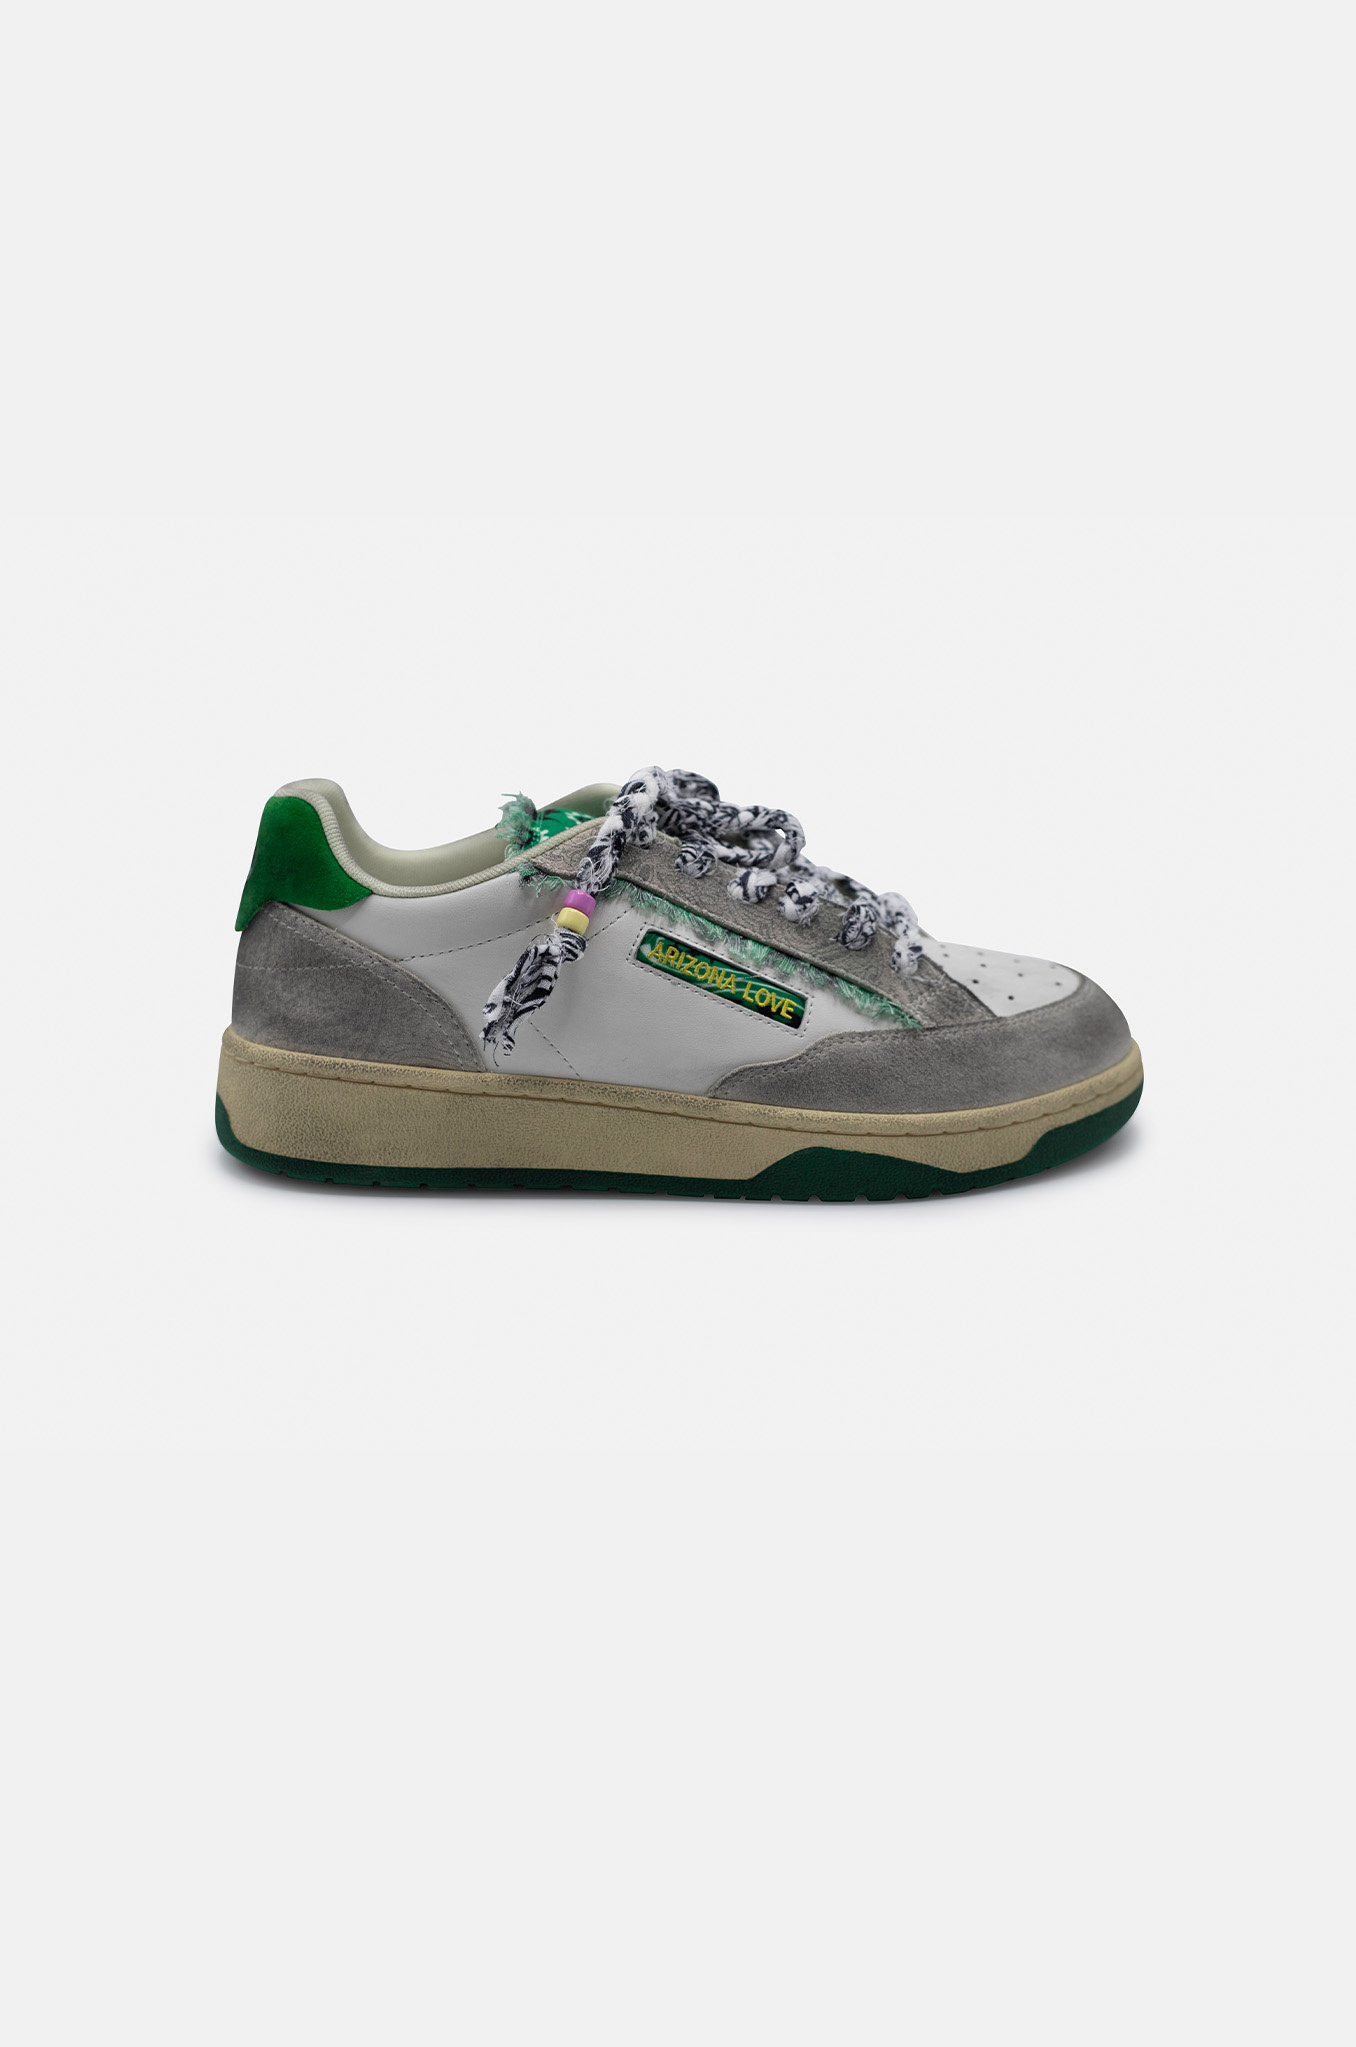 Buy Skechers Men's Venice T-kinane Fashion Sneakers White/Green D(m) Us  White/Green 13 D(M) US at Amazon.in